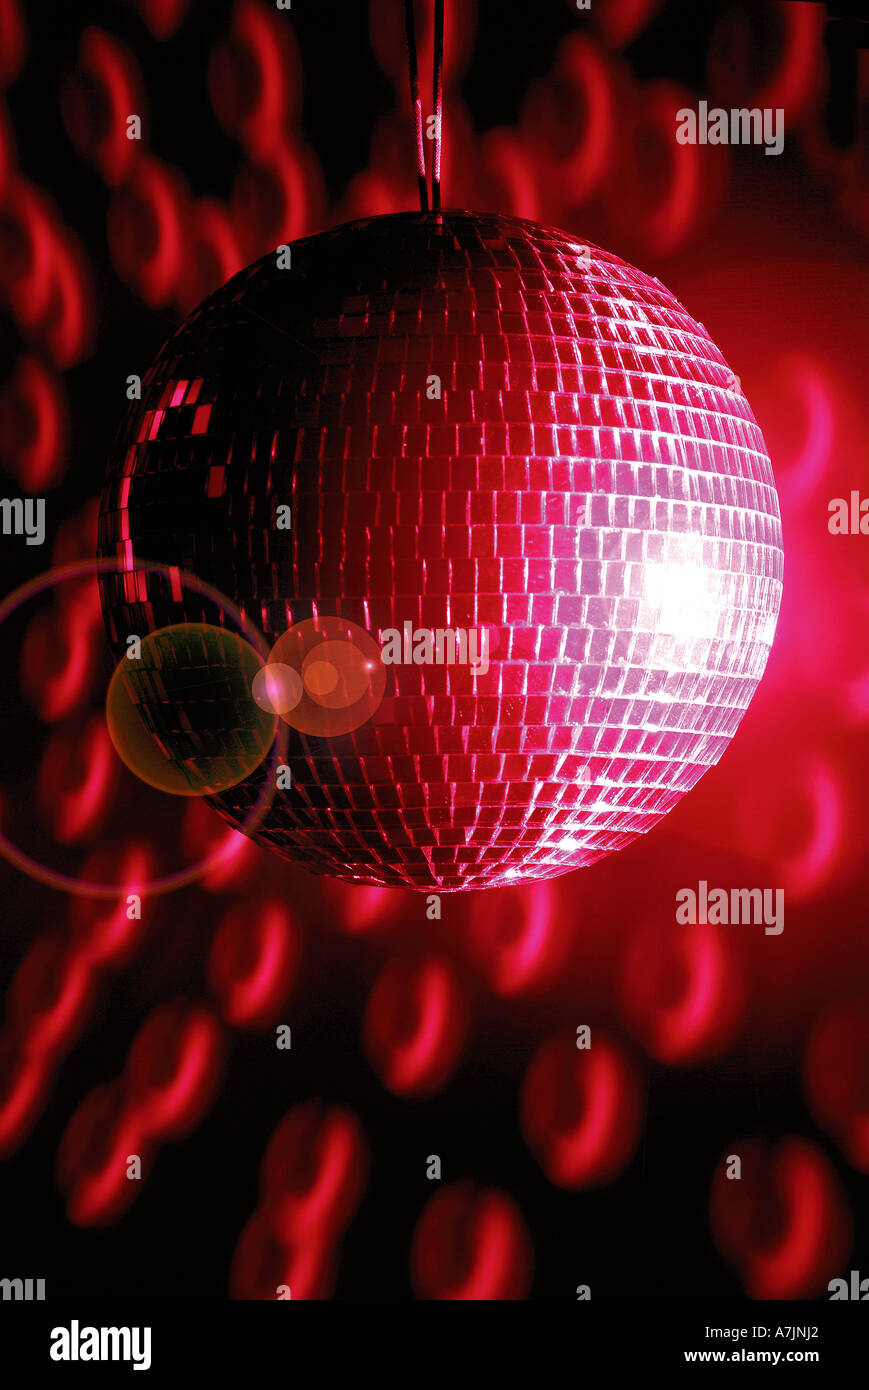 Glänzende Discokugel Im Sankt-Hut Stockbild - Bild von nachtklub, leuchten:  16292831